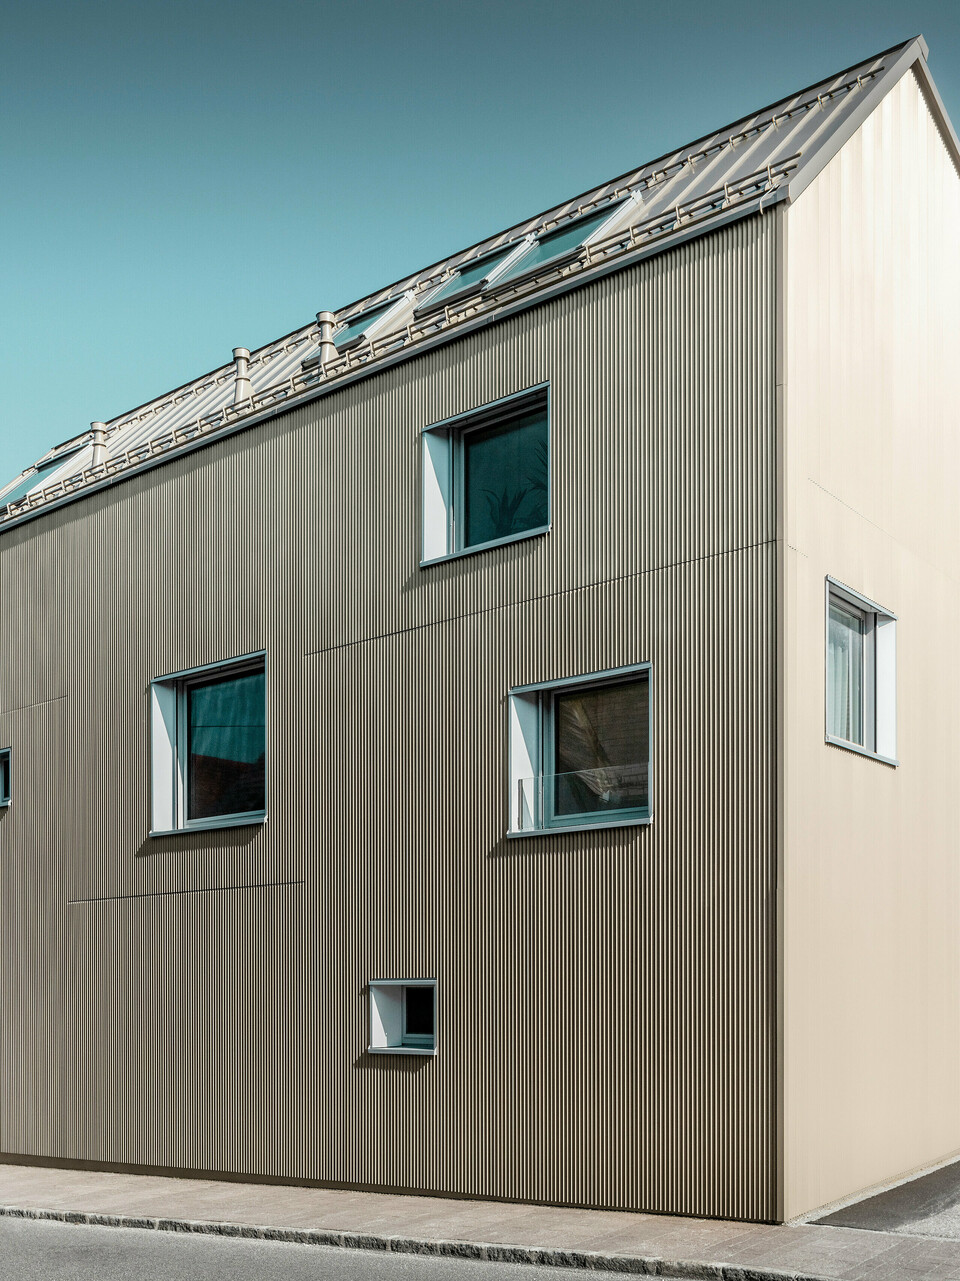 Ein modernes Einfamilienhaus in Frankenburg, Österreich zeichnet sich durch eine klare, rechtwinklige Formensprache und eine einheitliche Fassadengestaltung in Form des PREFA Zackenprofils in Bronze aus. Diese Profile verleihen der Oberfläche Struktur und Tiefe, während sie im Tageslicht changierende Schattierungen und eine ansprechende Textur hervorbringen. Das Dach ist mit PREFALZ in einer passenden Farbgebung bedeckt, was die homogene und zeitgenössische Ästhetik unterstützt. Die unregelmäßig platzierten Fenster unterbrechen die Fassade gezielt und ermöglichen Einblicke sowie natürliches Licht im Inneren, ohne die minimalistische Ausstrahlung zu beeinträchtigen.